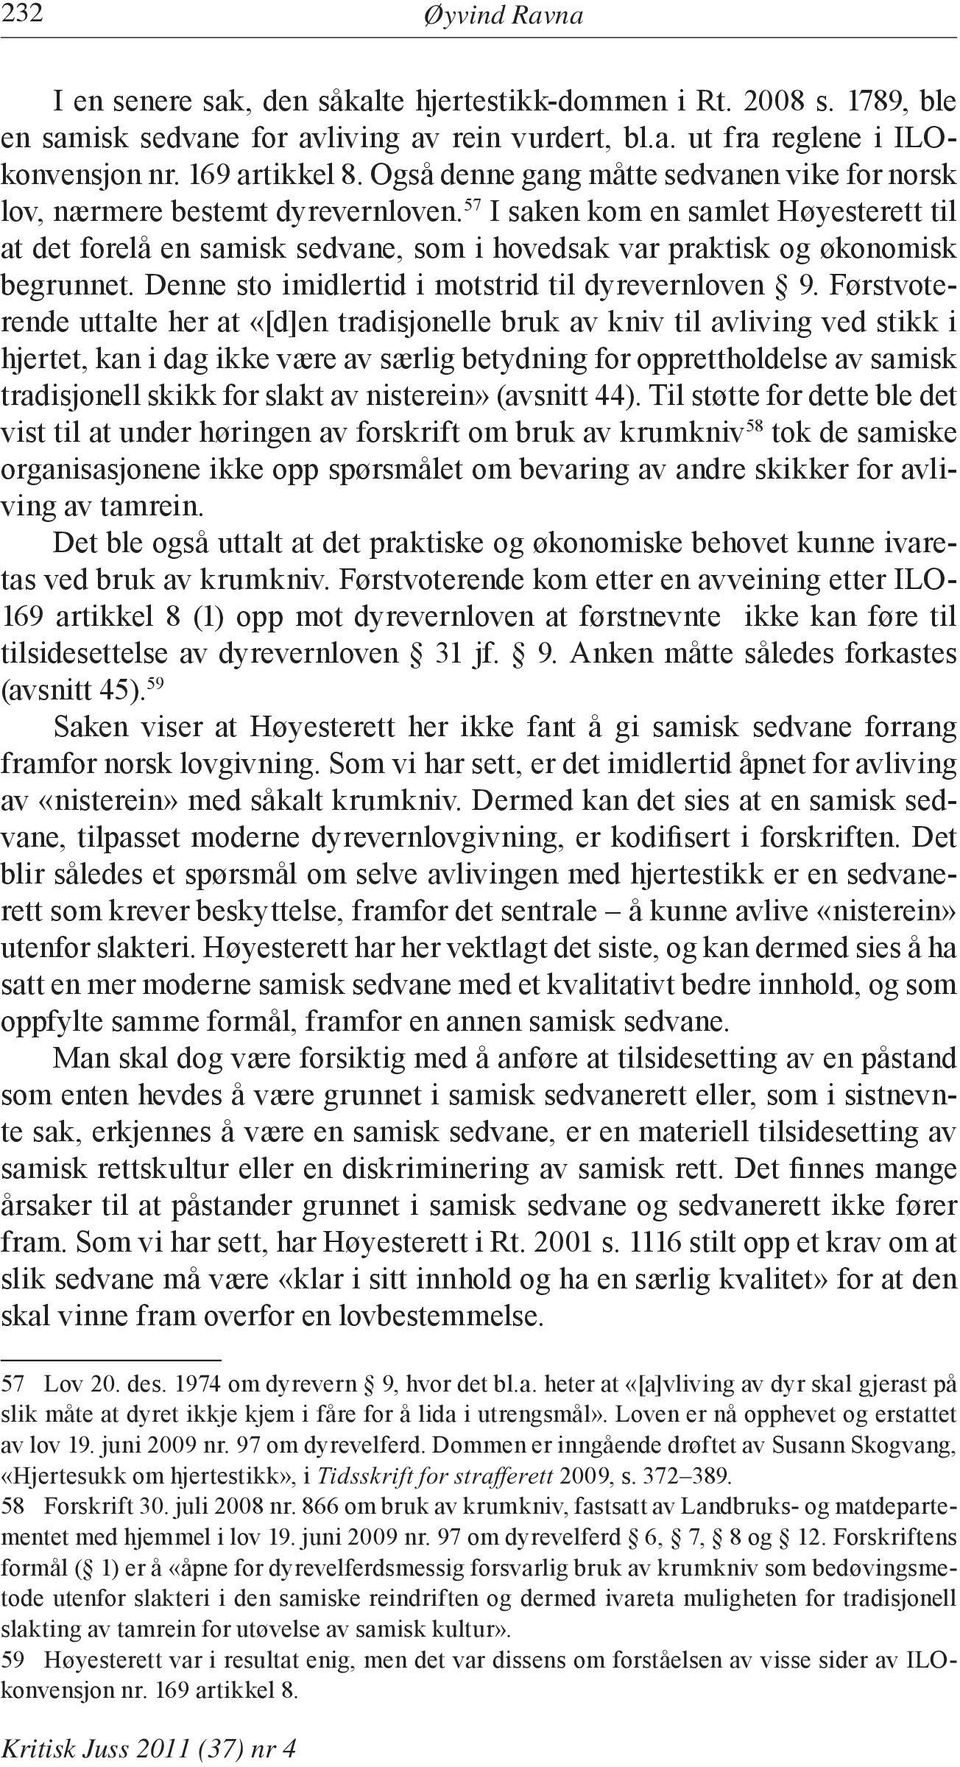 57 I saken kom en samlet Høyesterett til at det forelå en samisk sedvane, som i hovedsak var praktisk og økonomisk begrunnet. Denne sto imidlertid i motstrid til dyrevernloven 9.